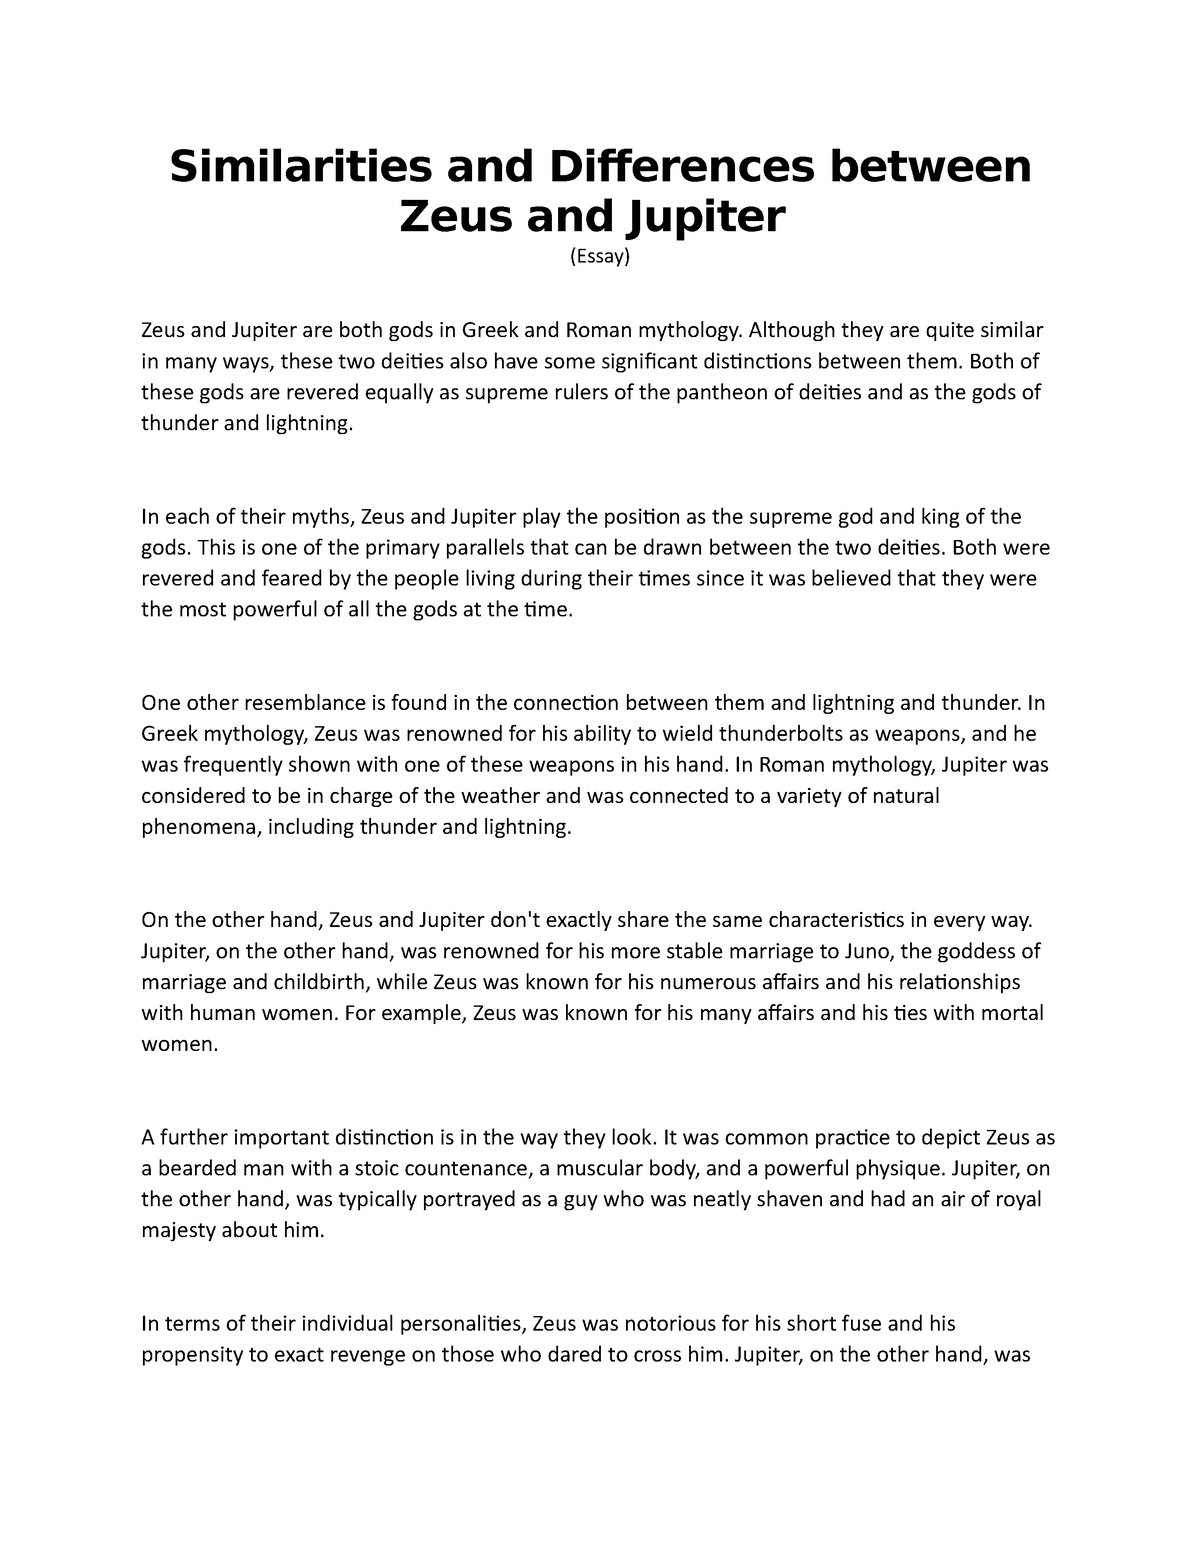 5 paragraph essay on zeus